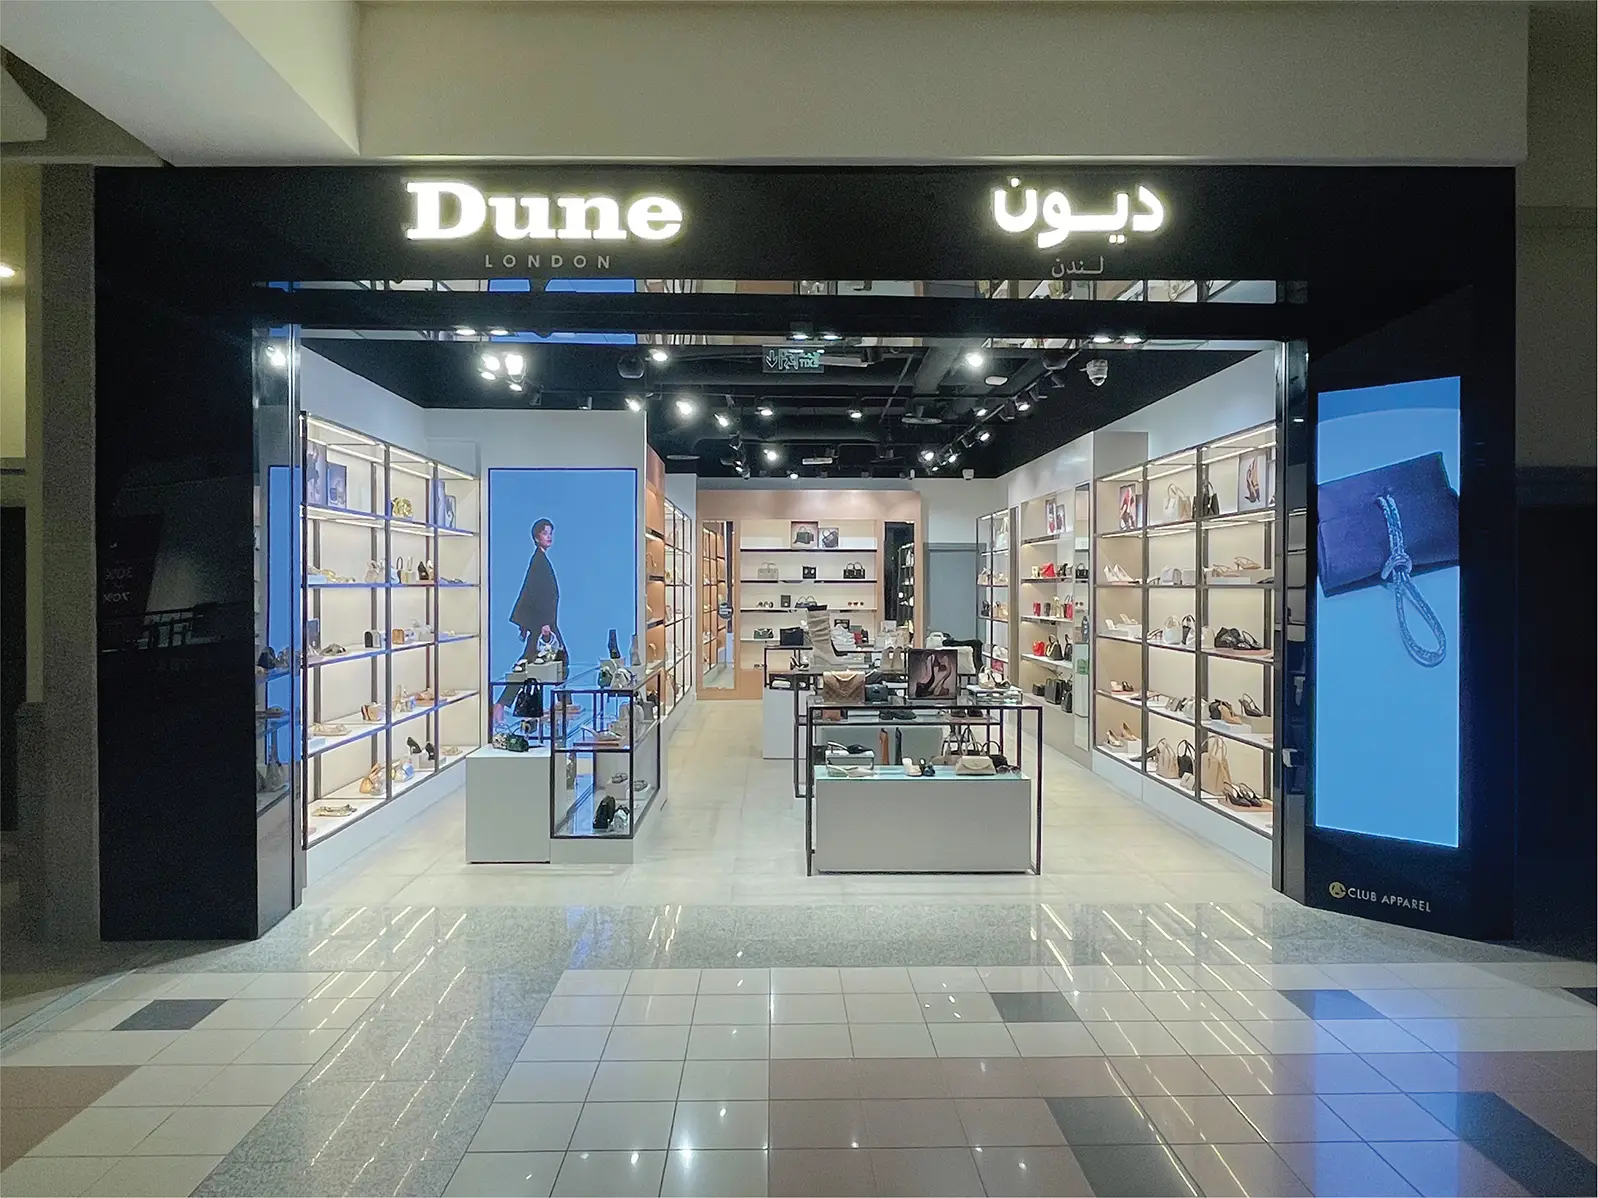 تم افتتاح متجر ديون لندن في مركز المملكة في الرياض السعودية